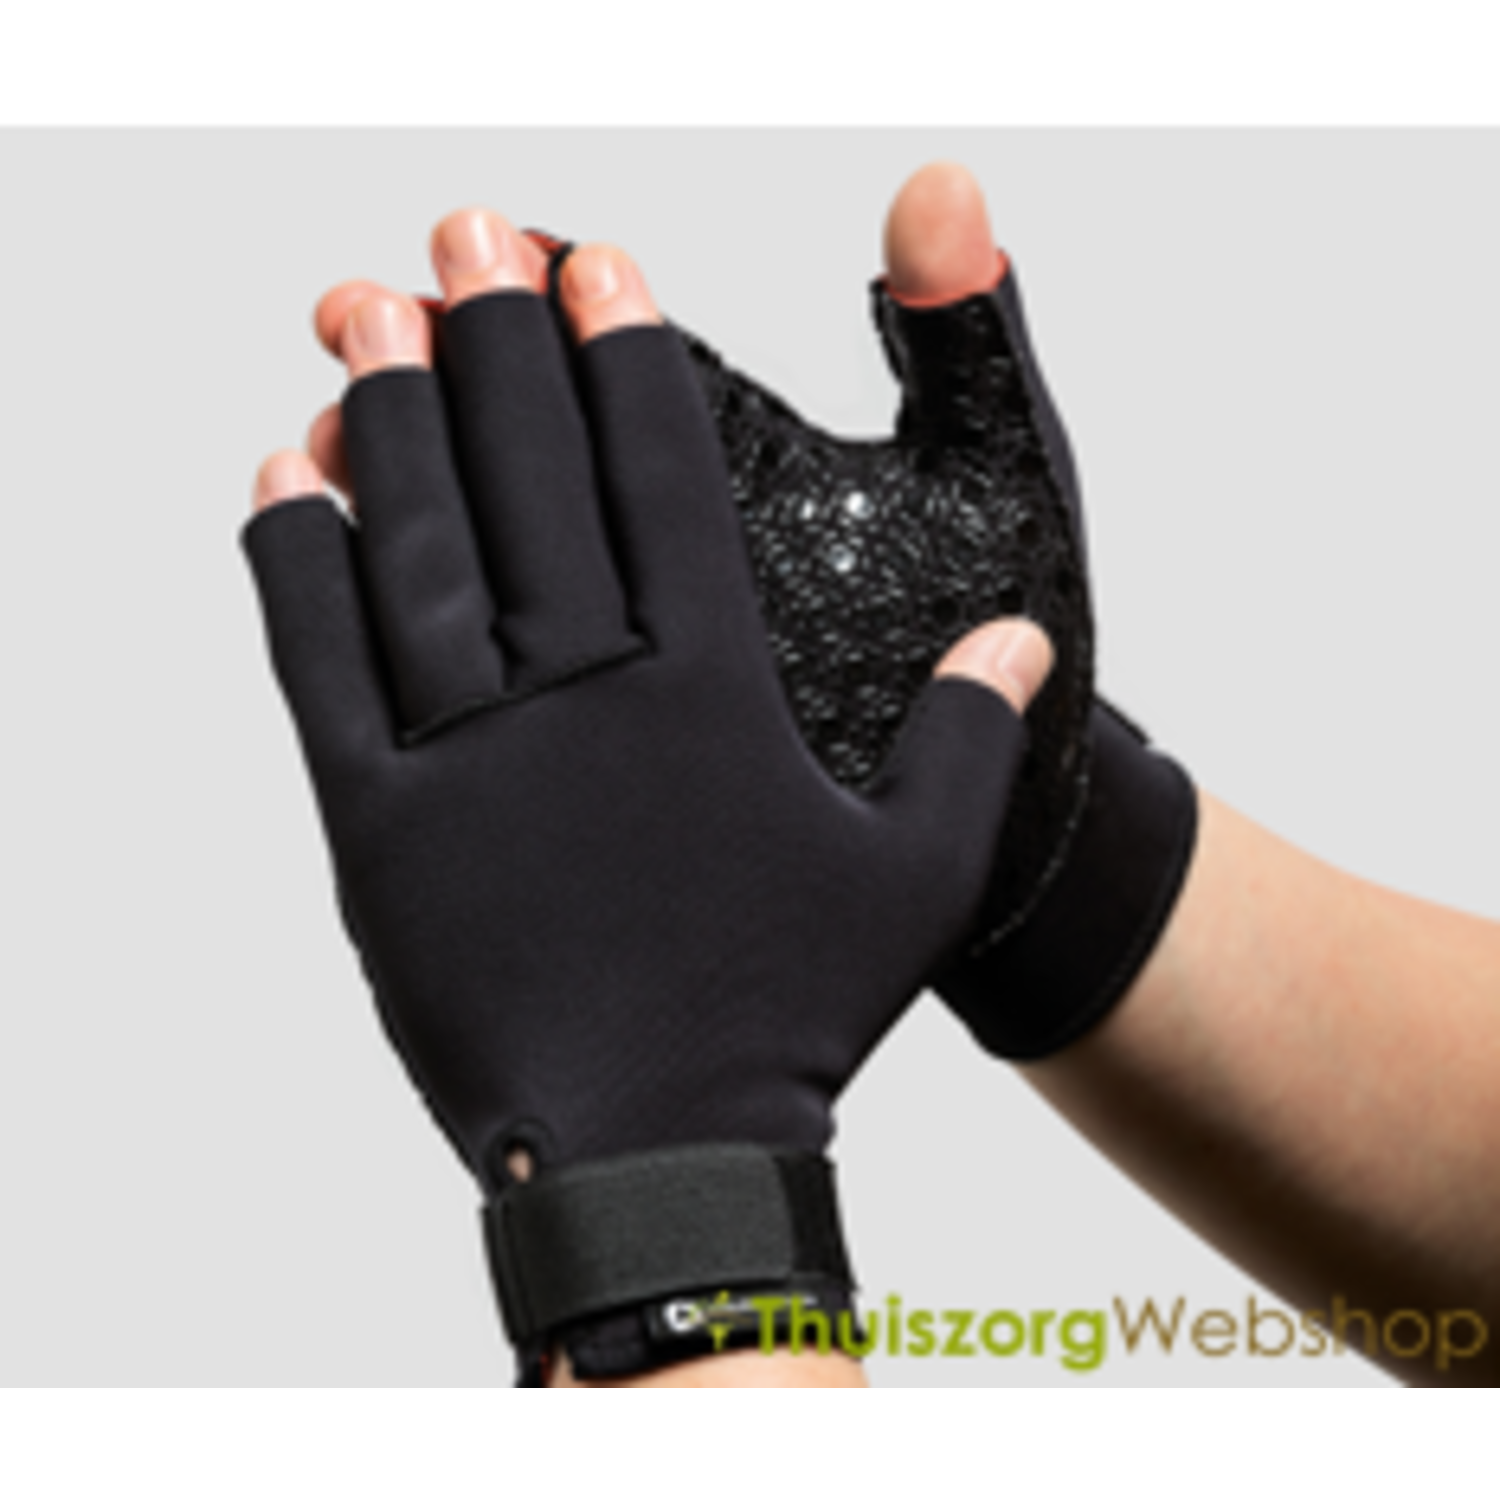 Artritis handschoenen van Thermoskin kopen - ThuiszorgWebshop.be